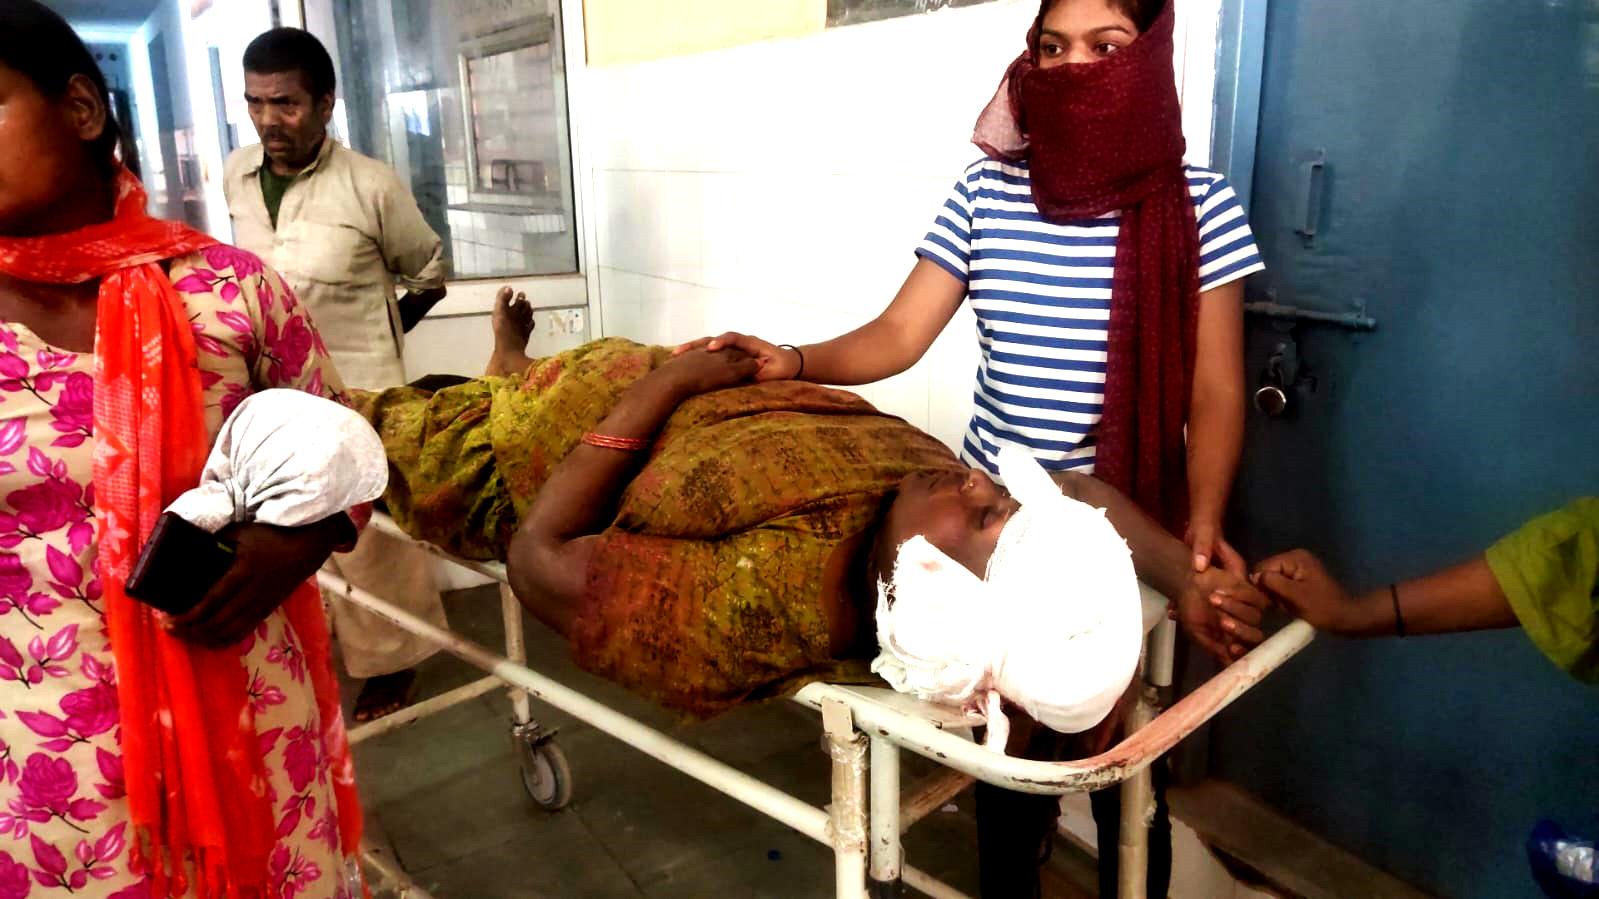 Saharanpur news : पुरानी रंजिश को लेकर दो पक्षों में संघर्ष, चार घायल